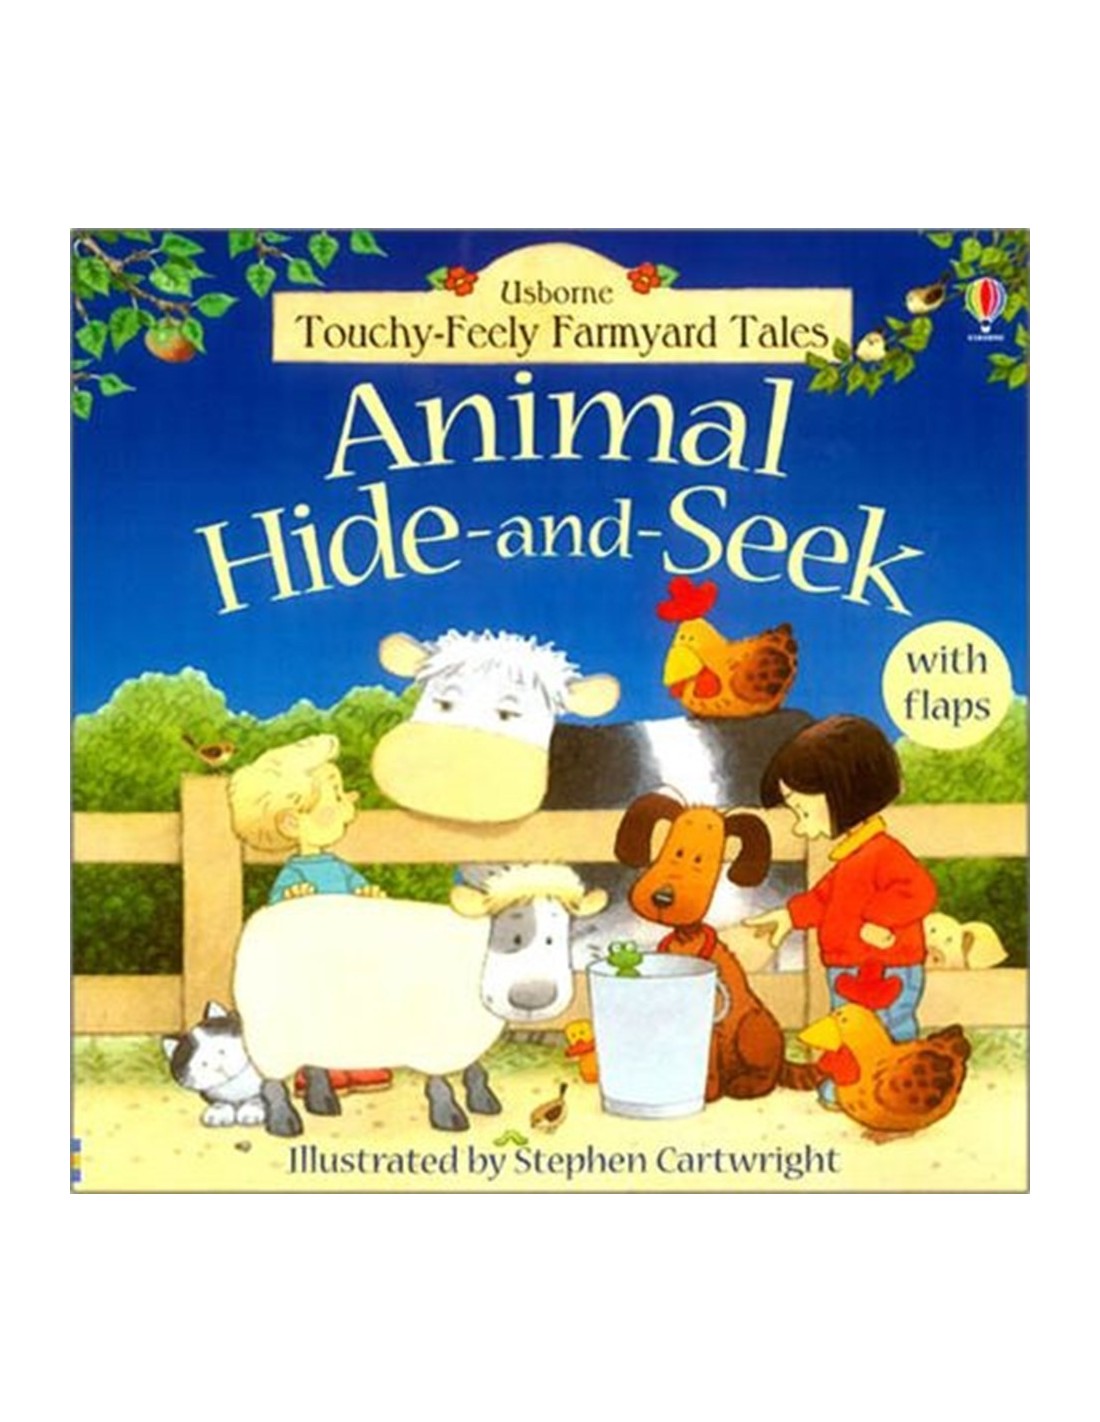 Animal hide-and-seek